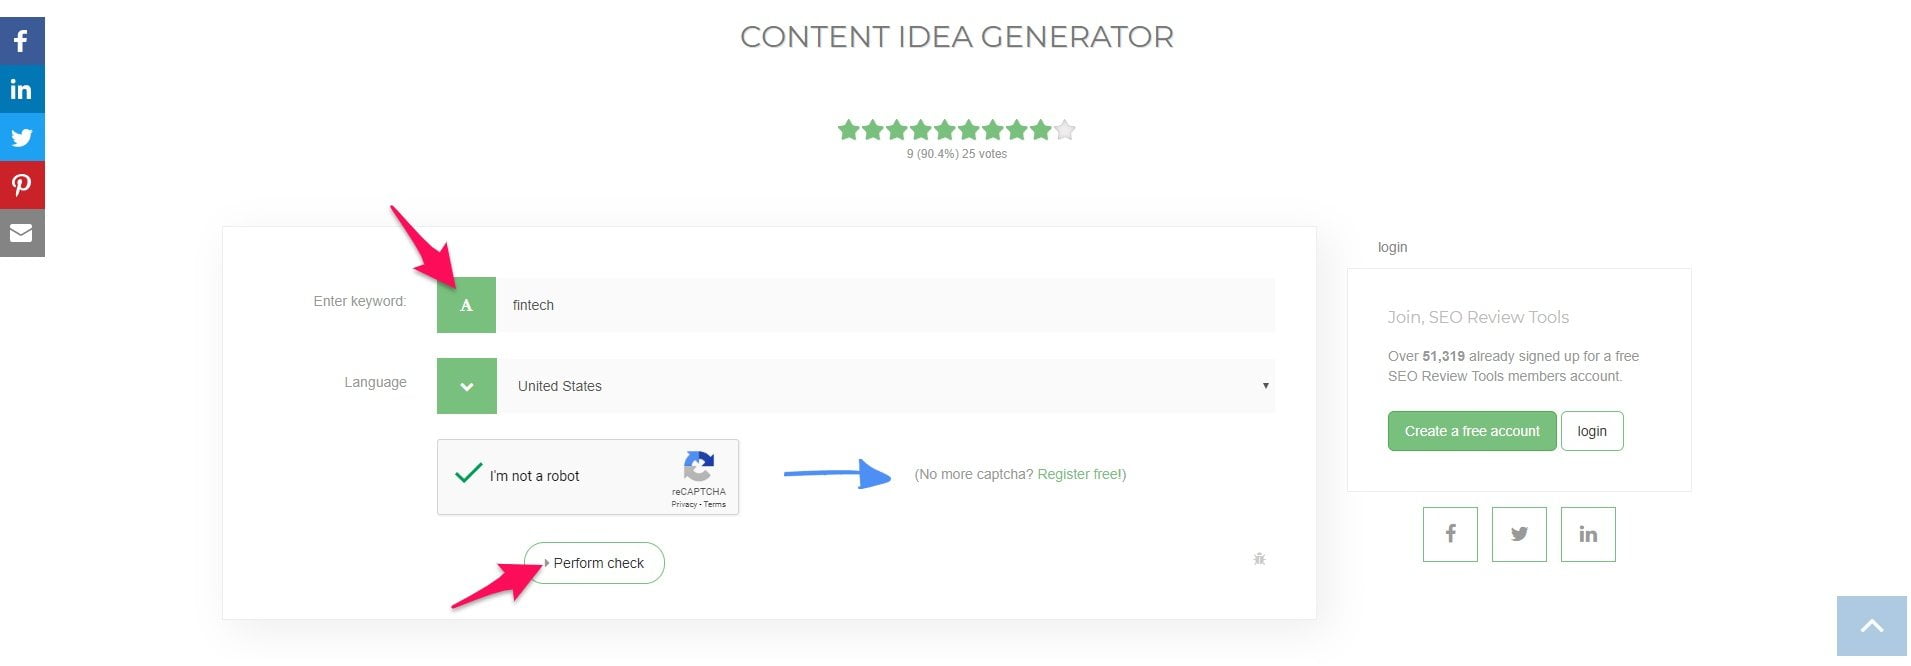 Content idea generator